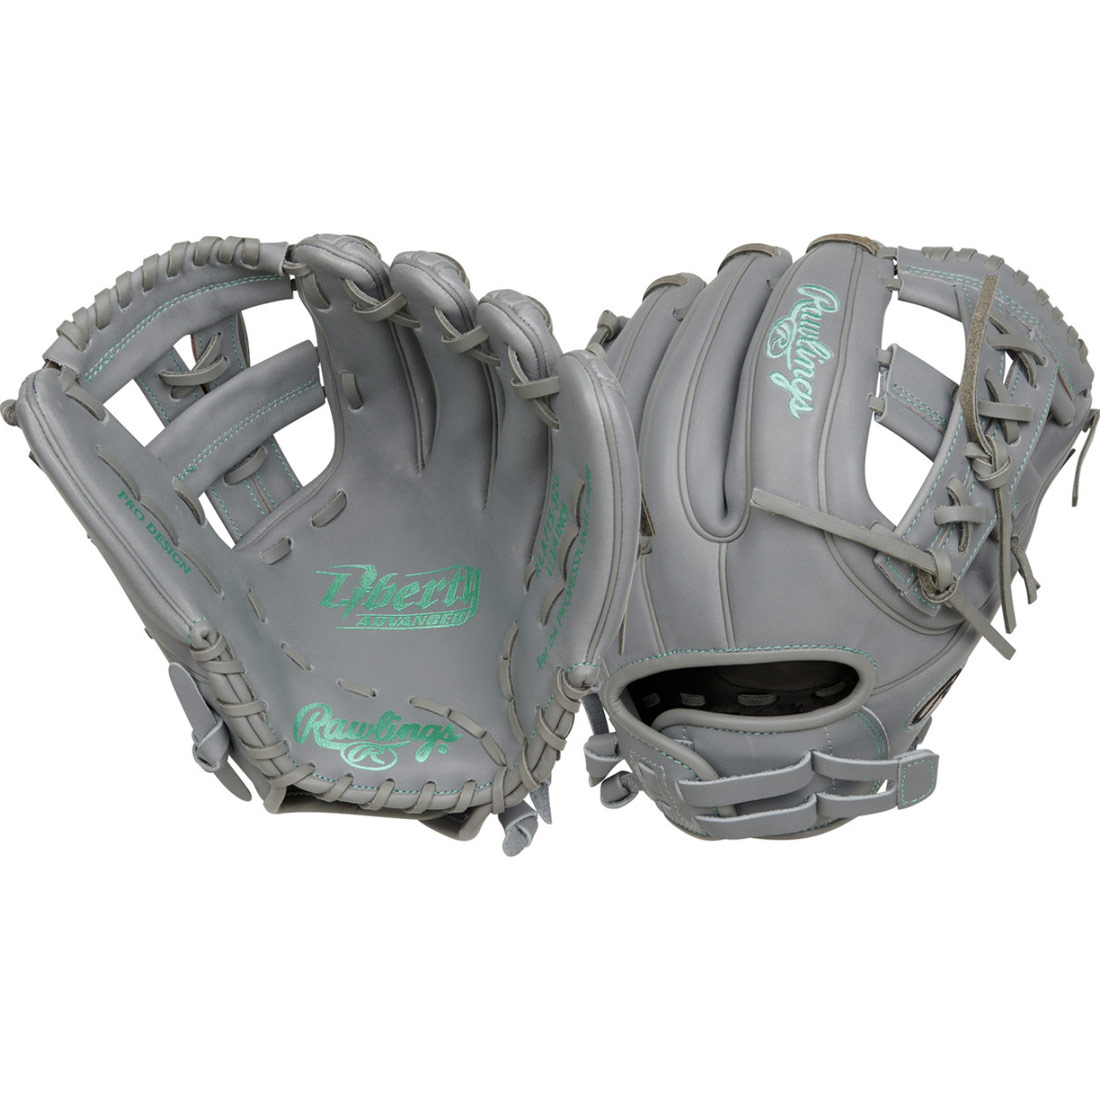 Rawlings Liberty Advanced Fastpitch Softball Glove 11.75\" RRLA715-32G